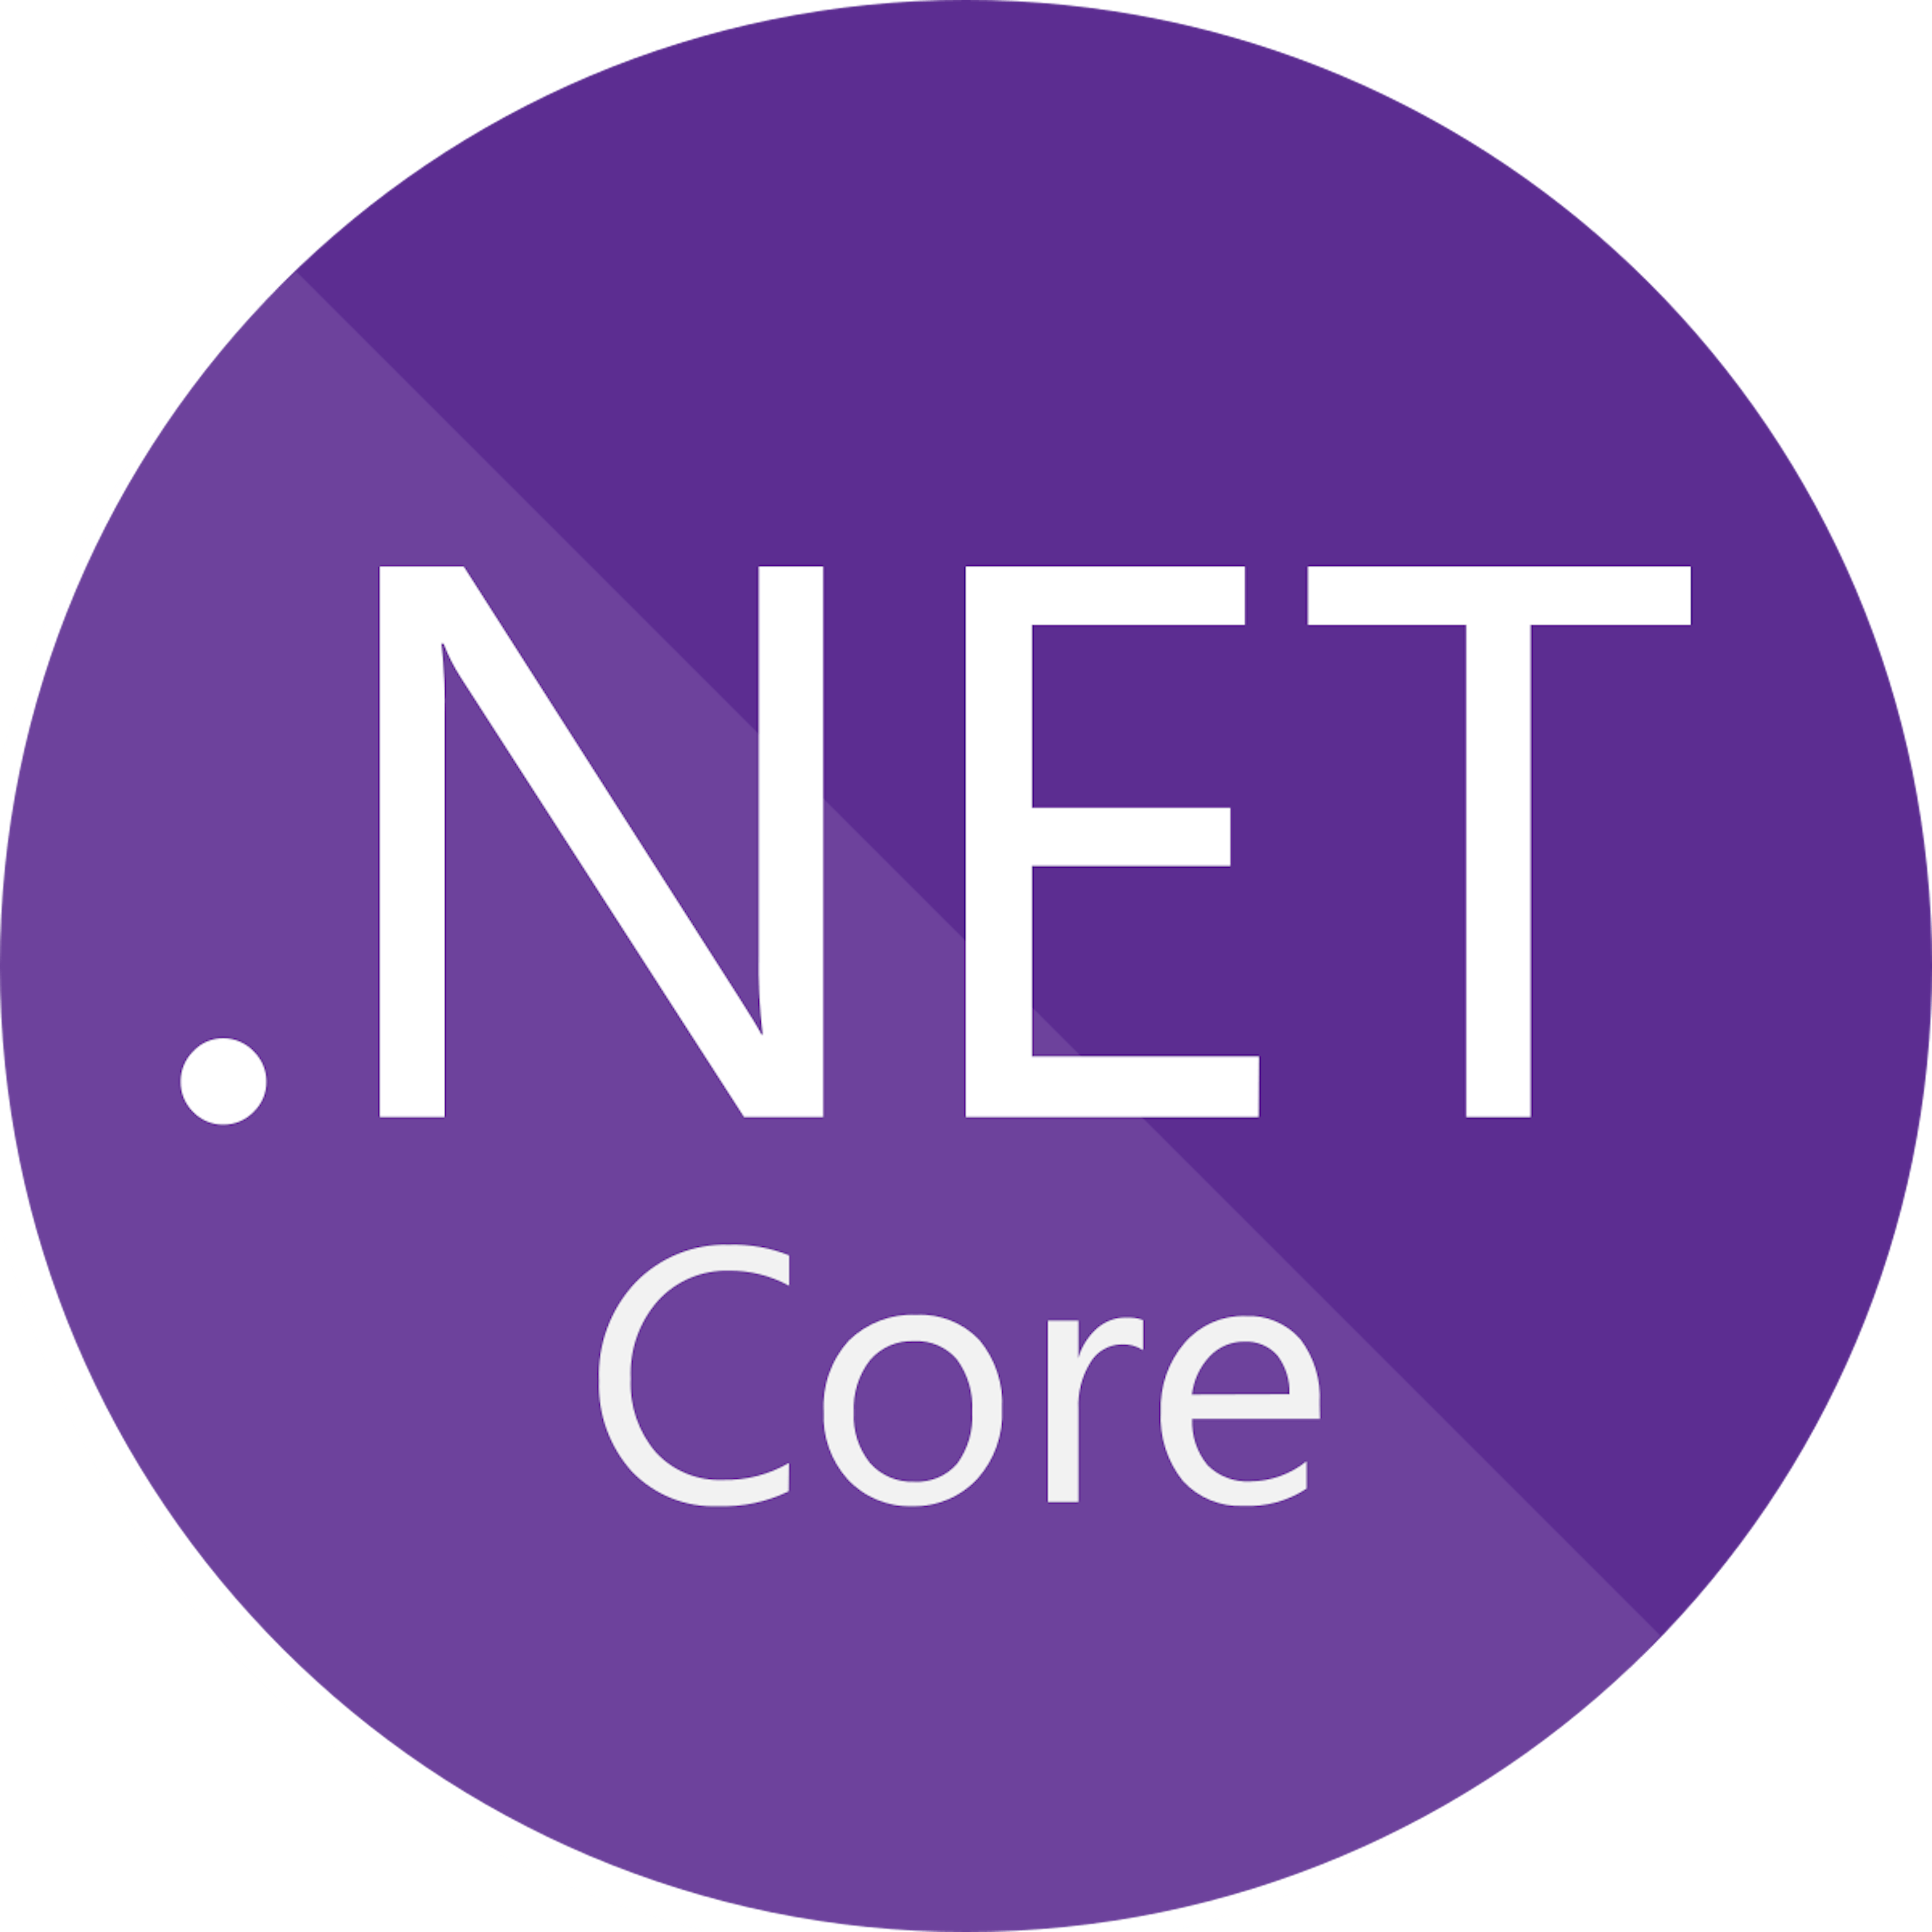 Microsoft .NET Core